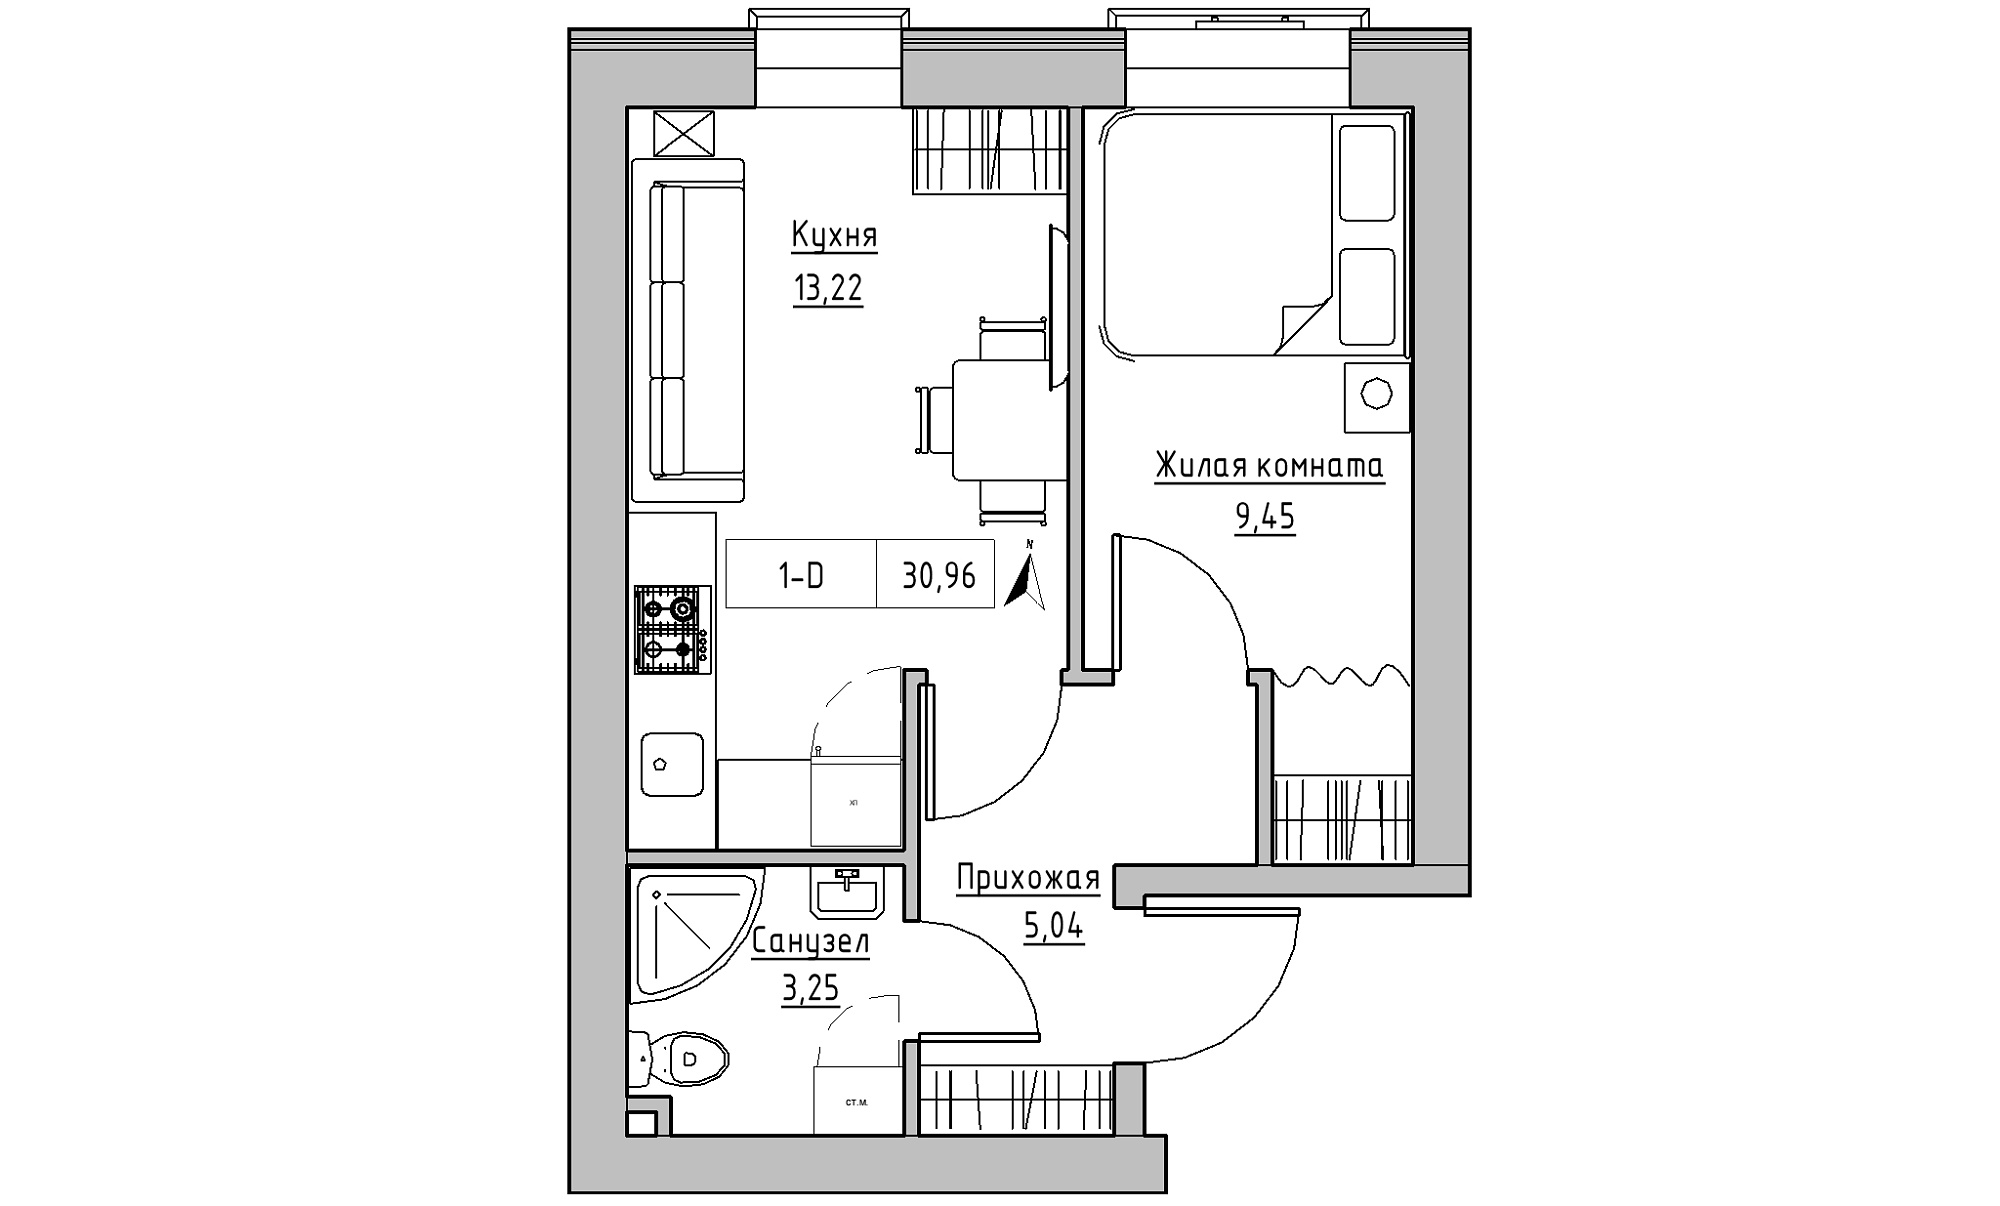 Планування 1-к квартира площею 30.96м2, KS-023-01/0015.